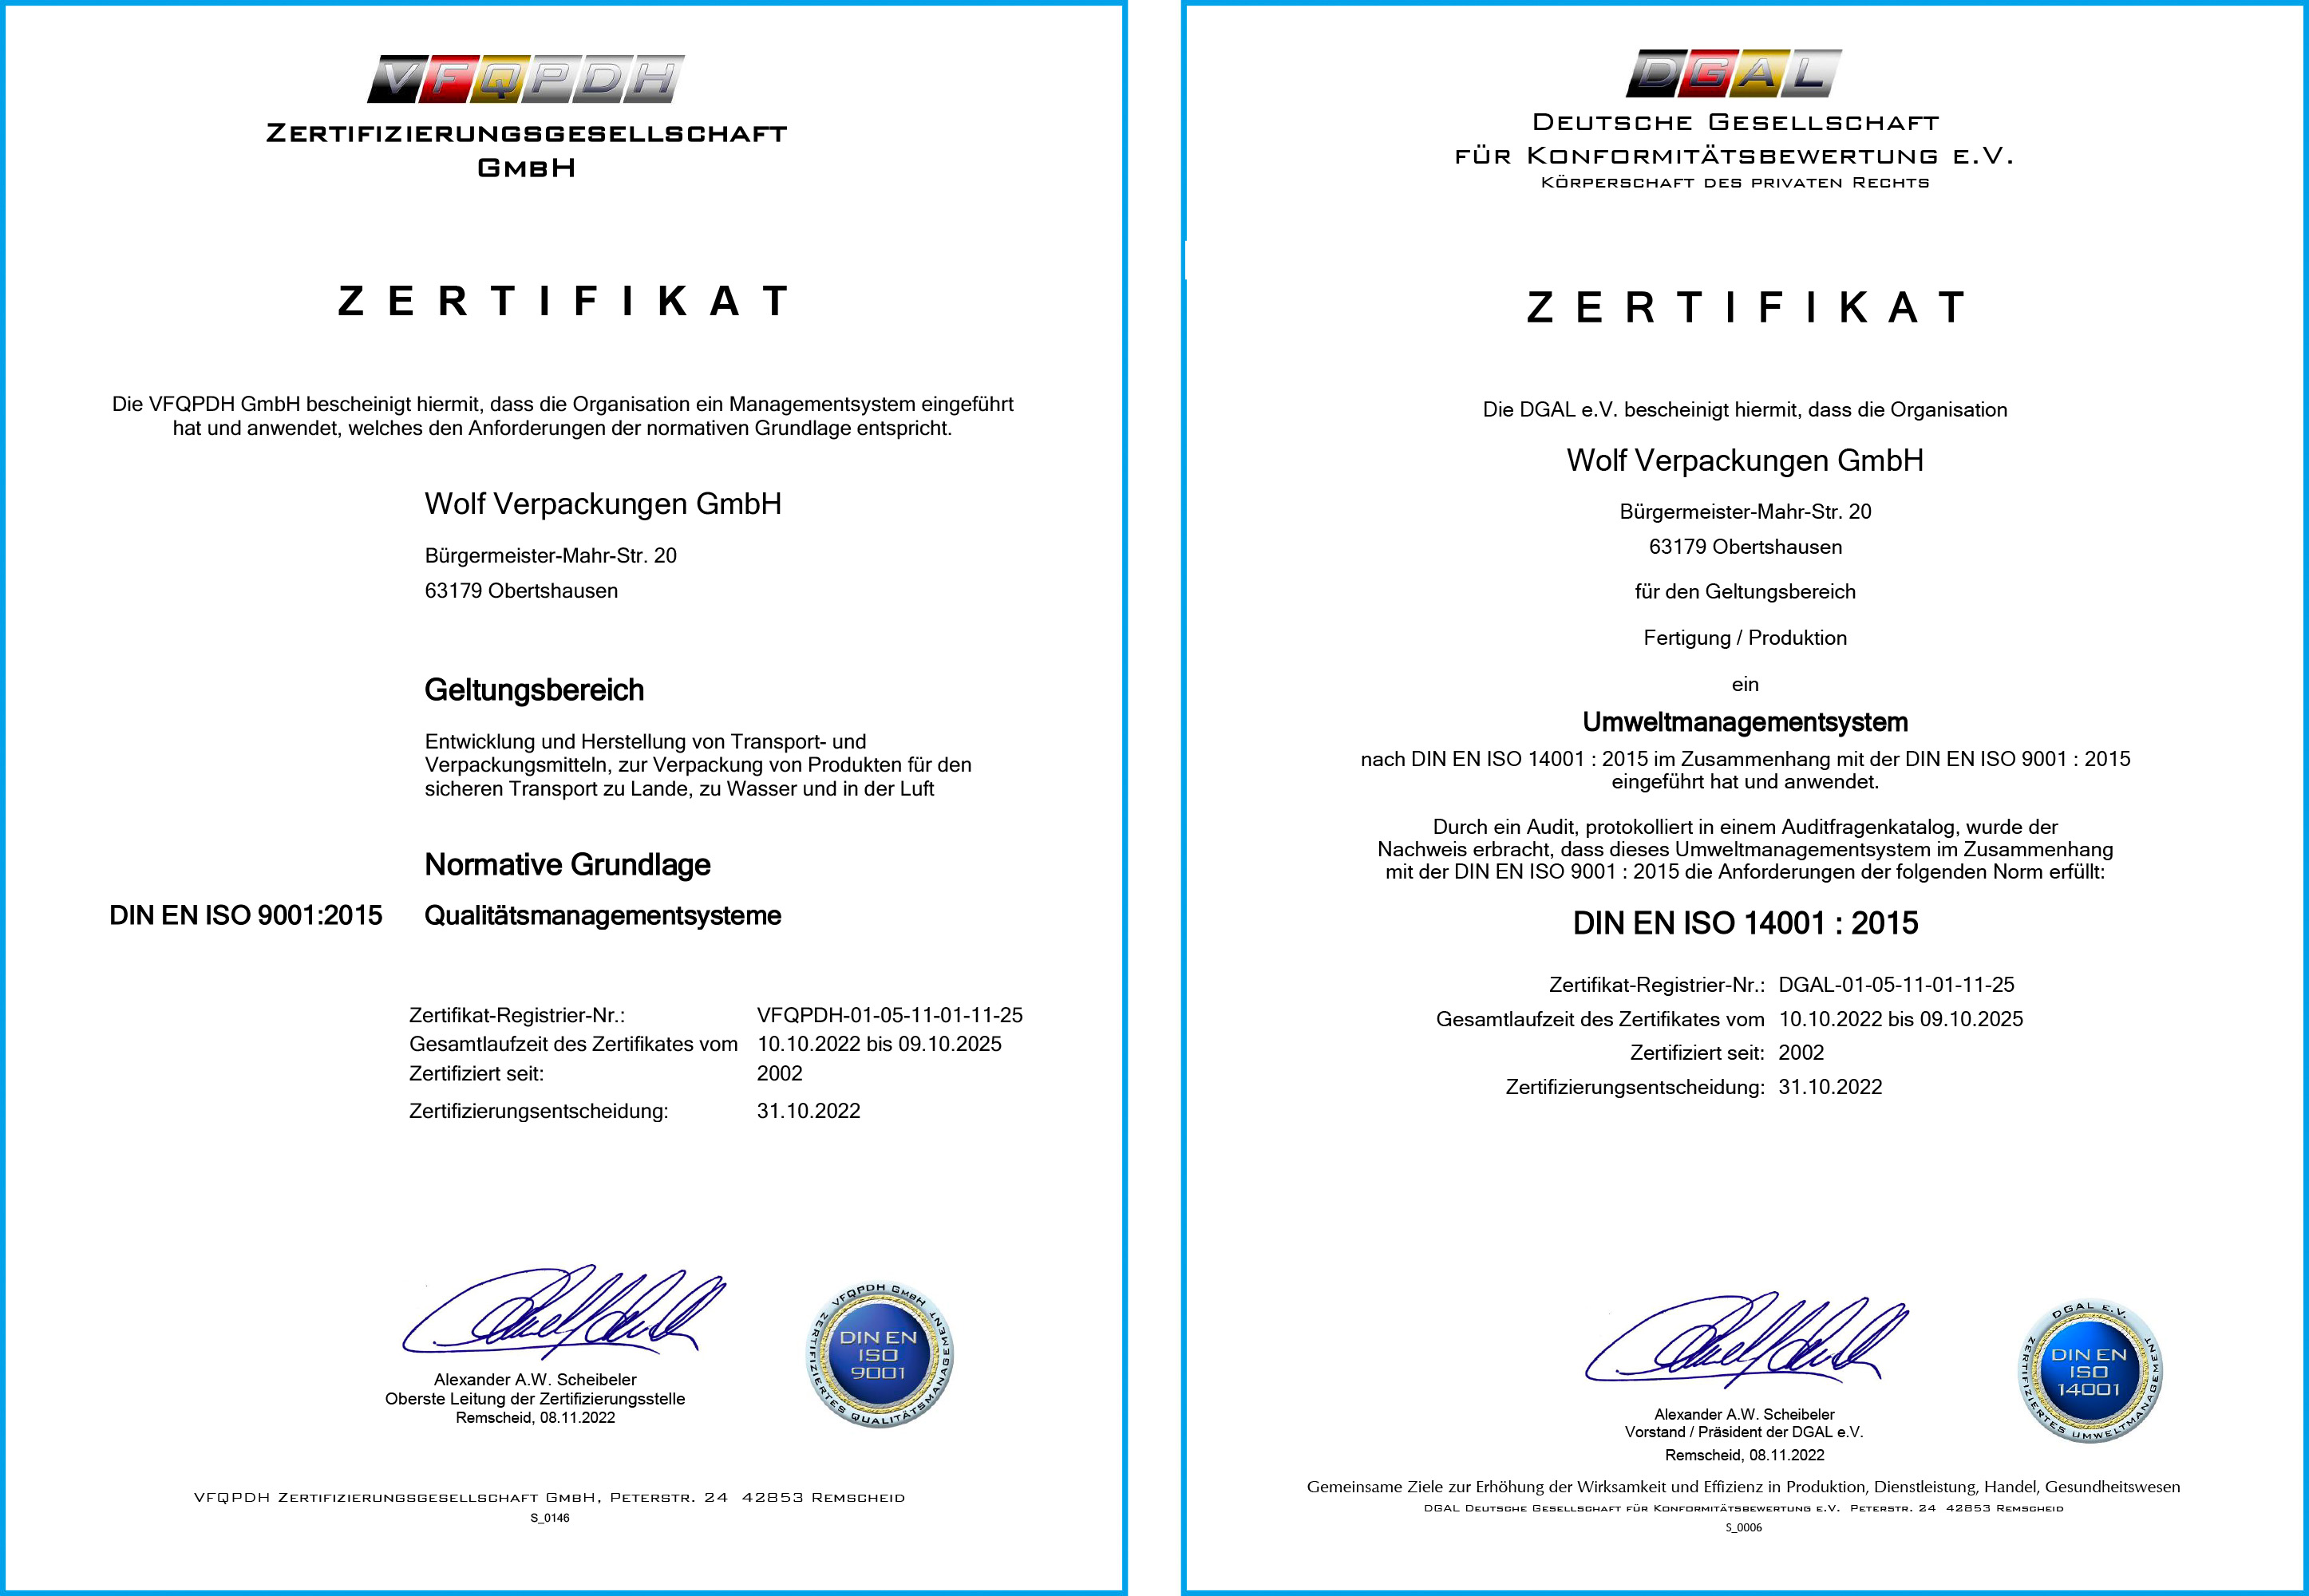 Wolf Verpackungen GmbH Zertifikate